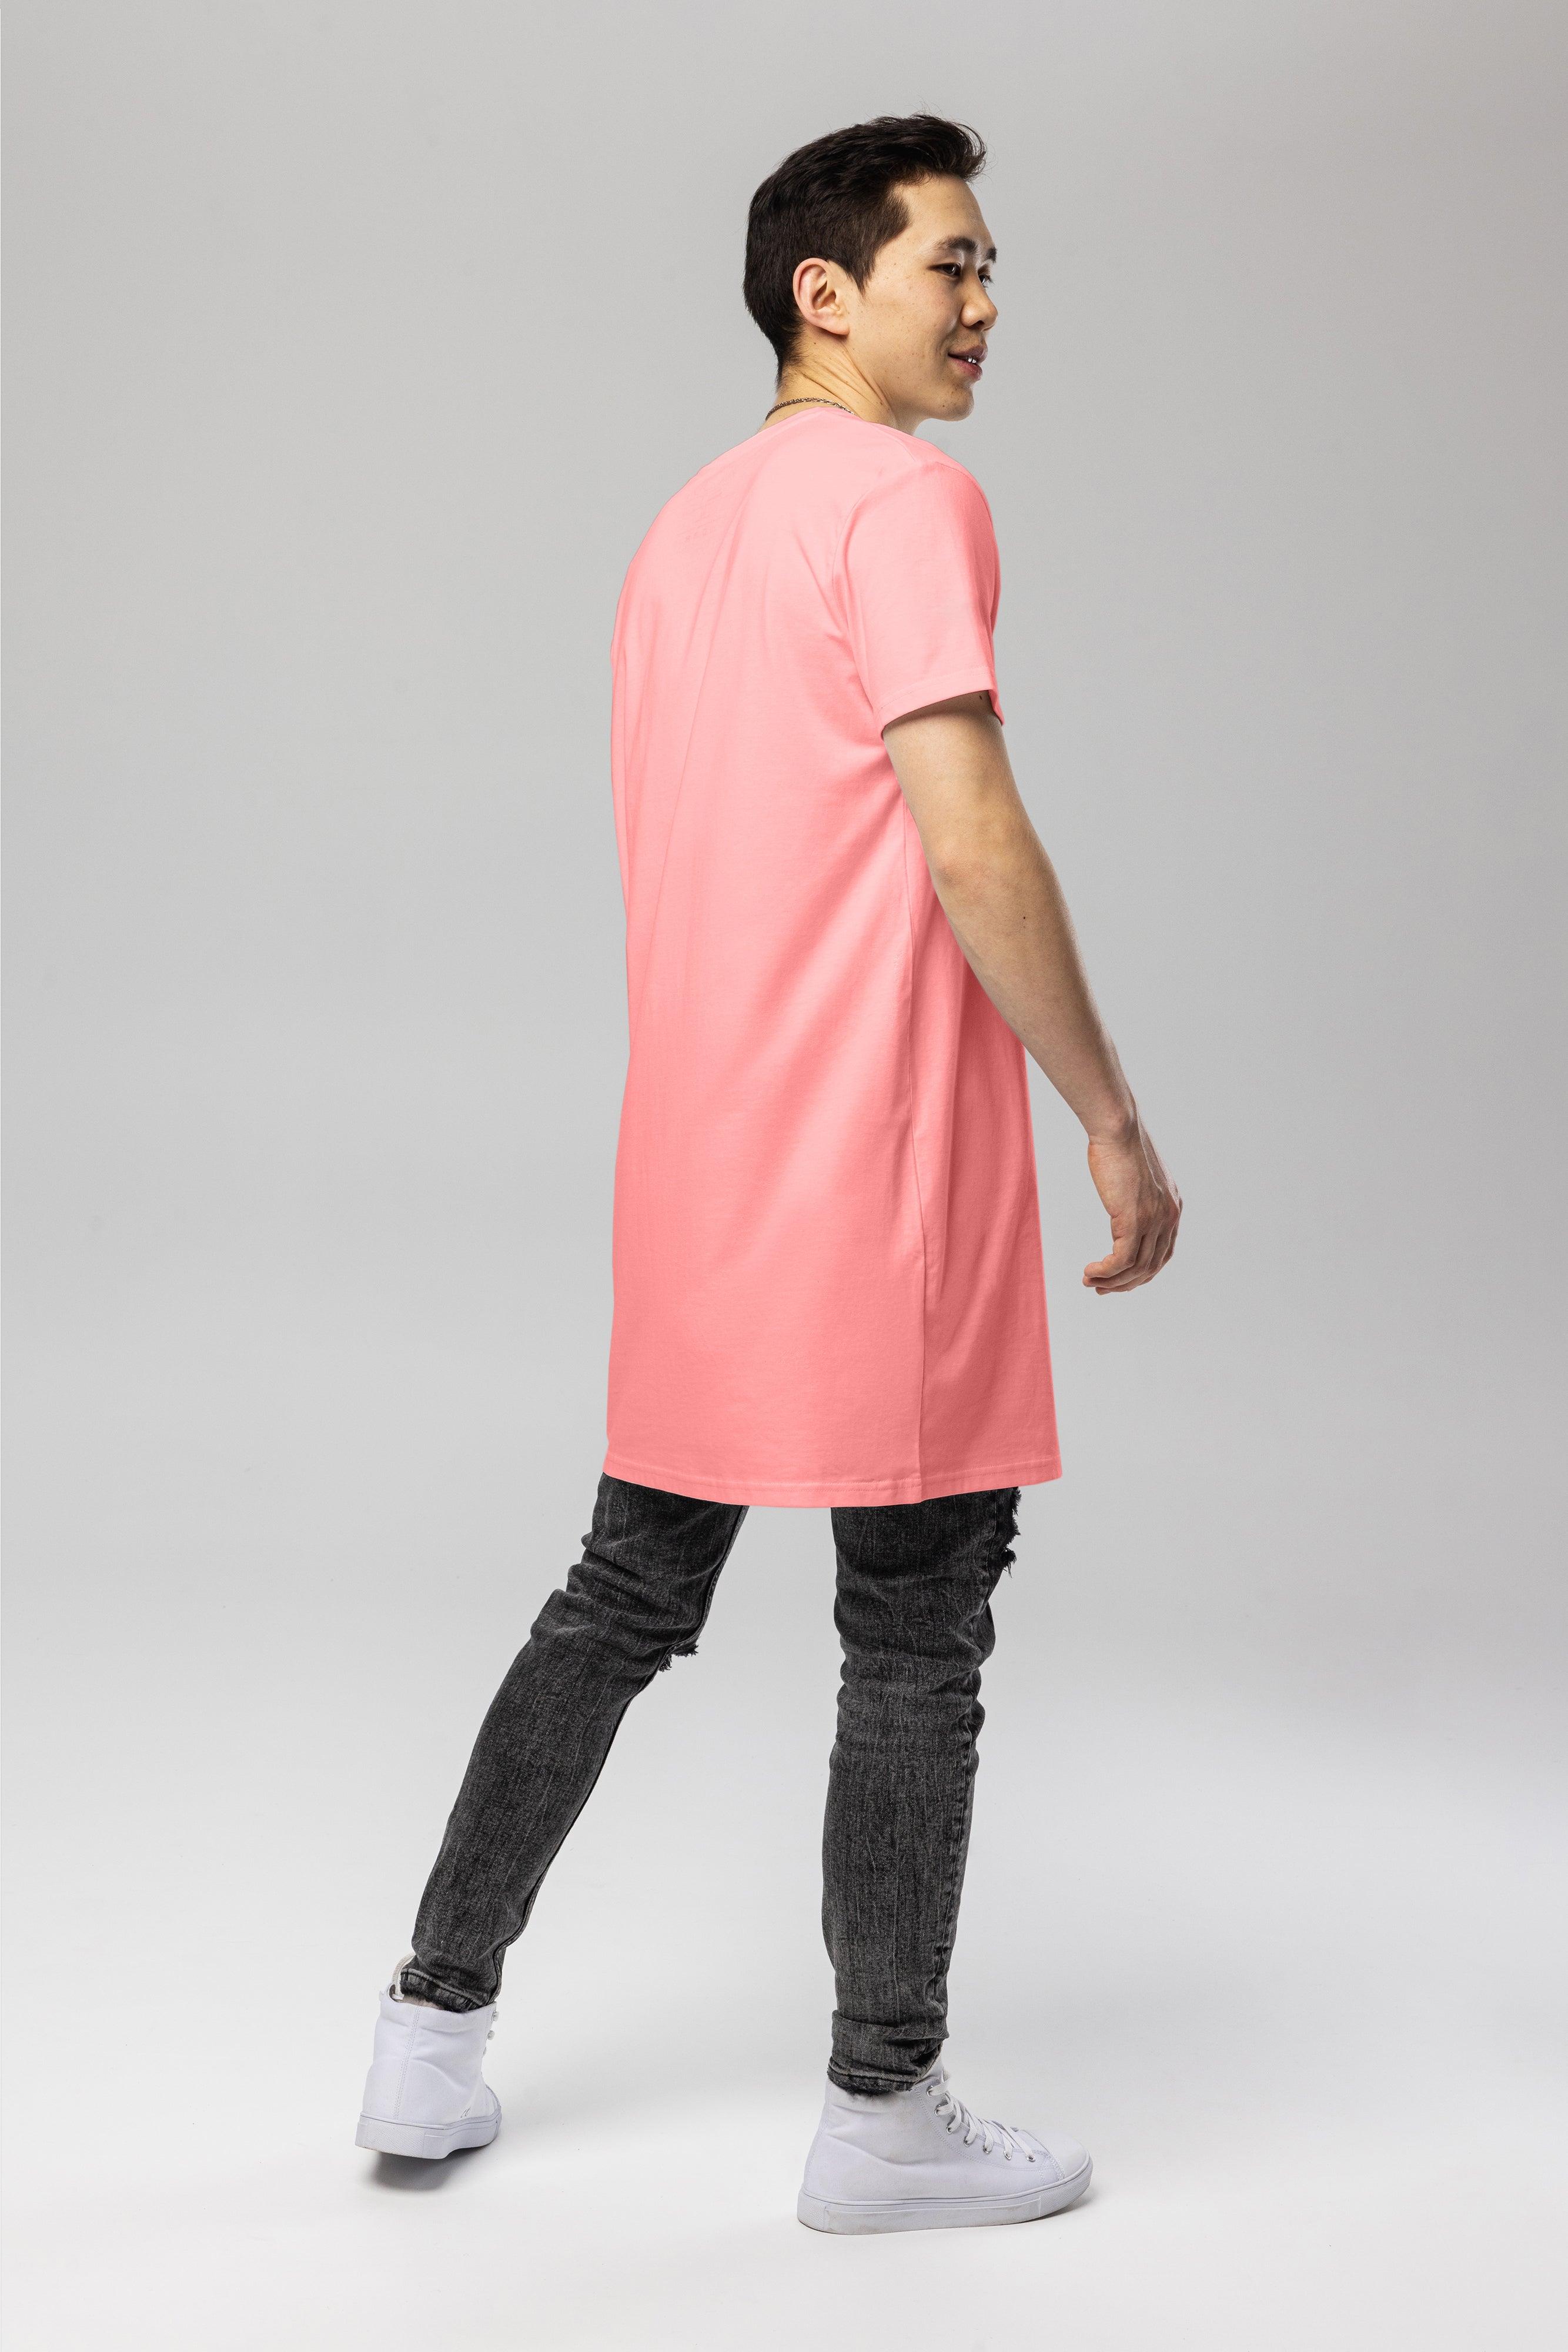 Pitod T-Shirt Dress | Dresses | pitod.com